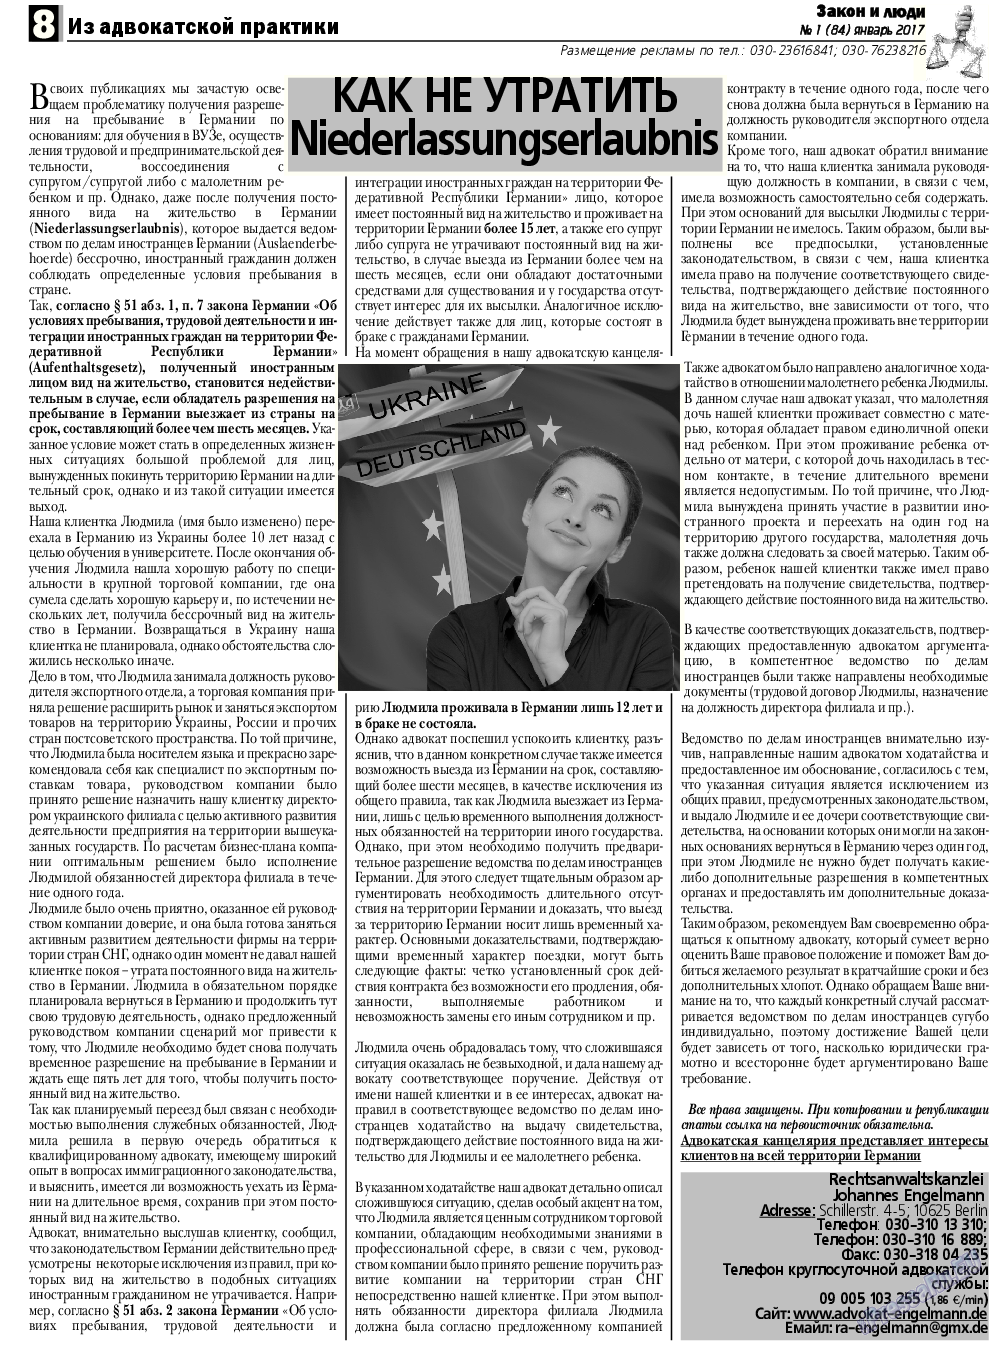 Закон и люди, газета. 2017 №1 стр.8